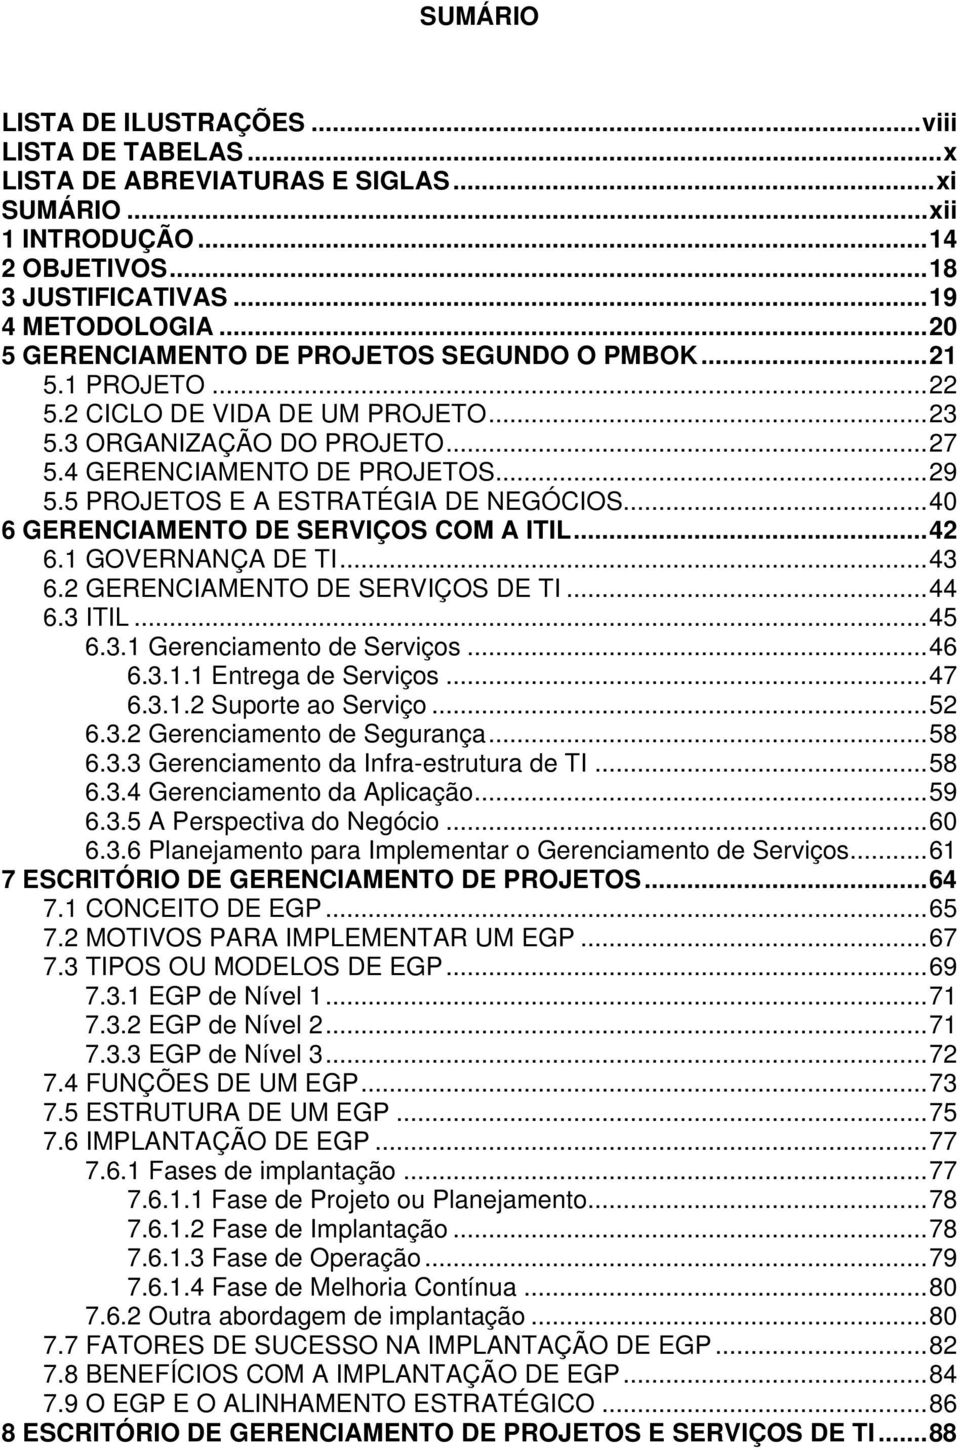 5 PROJETOS E A ESTRATÉGIA DE NEGÓCIOS...40 6 GERENCIAMENTO DE SERVIÇOS COM A ITIL...42 6.1 GOVERNANÇA DE TI...43 6.2 GERENCIAMENTO DE SERVIÇOS DE TI...44 6.3 ITIL...45 6.3.1 Gerenciamento de Serviços.